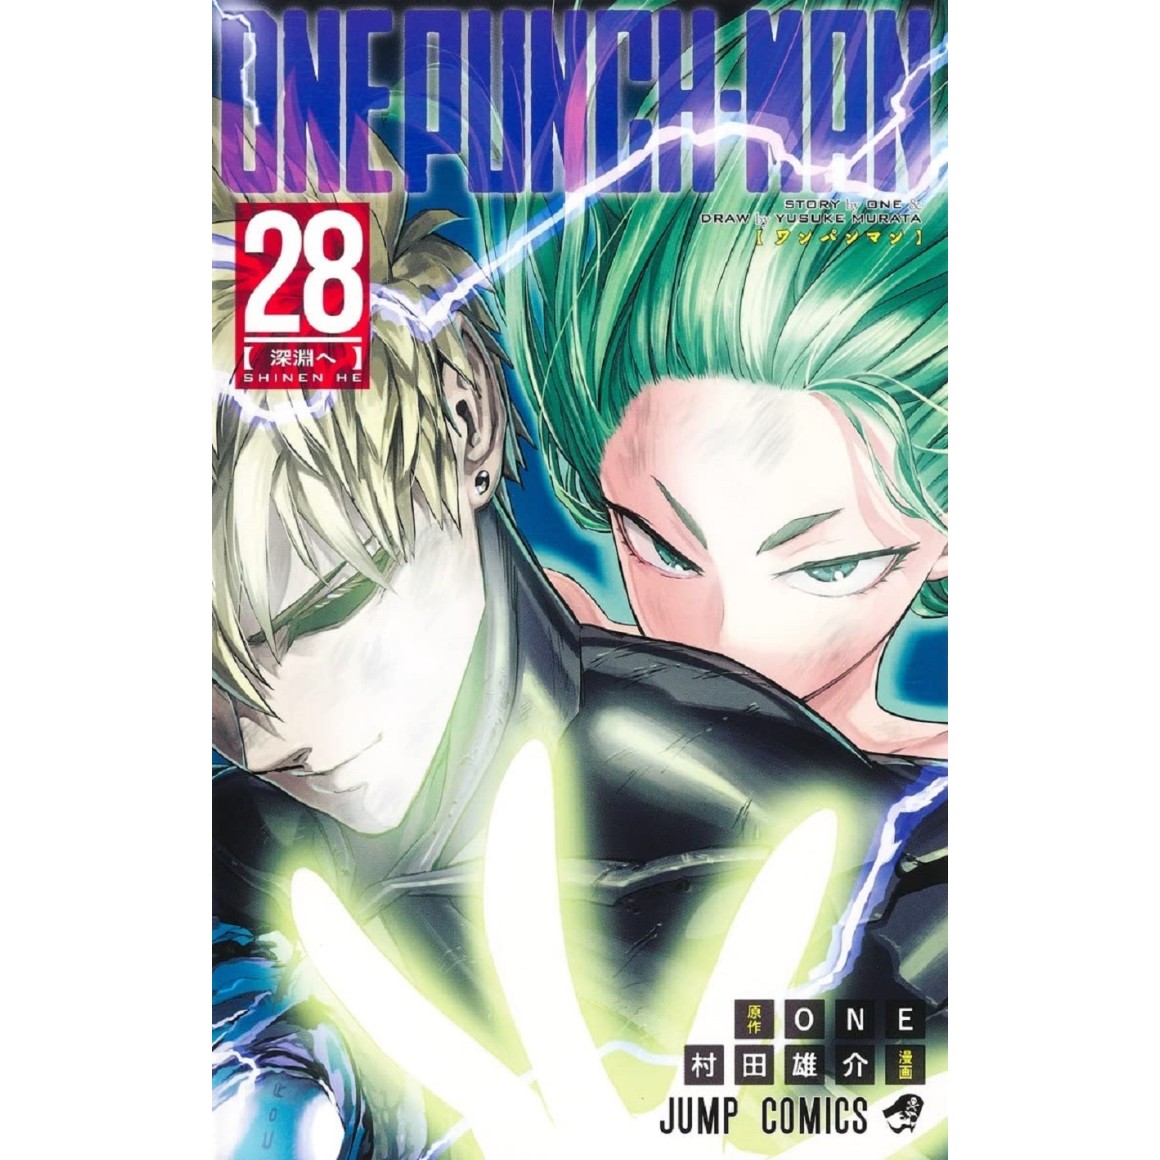 One-Punch Man, Vol. 23 - Animex